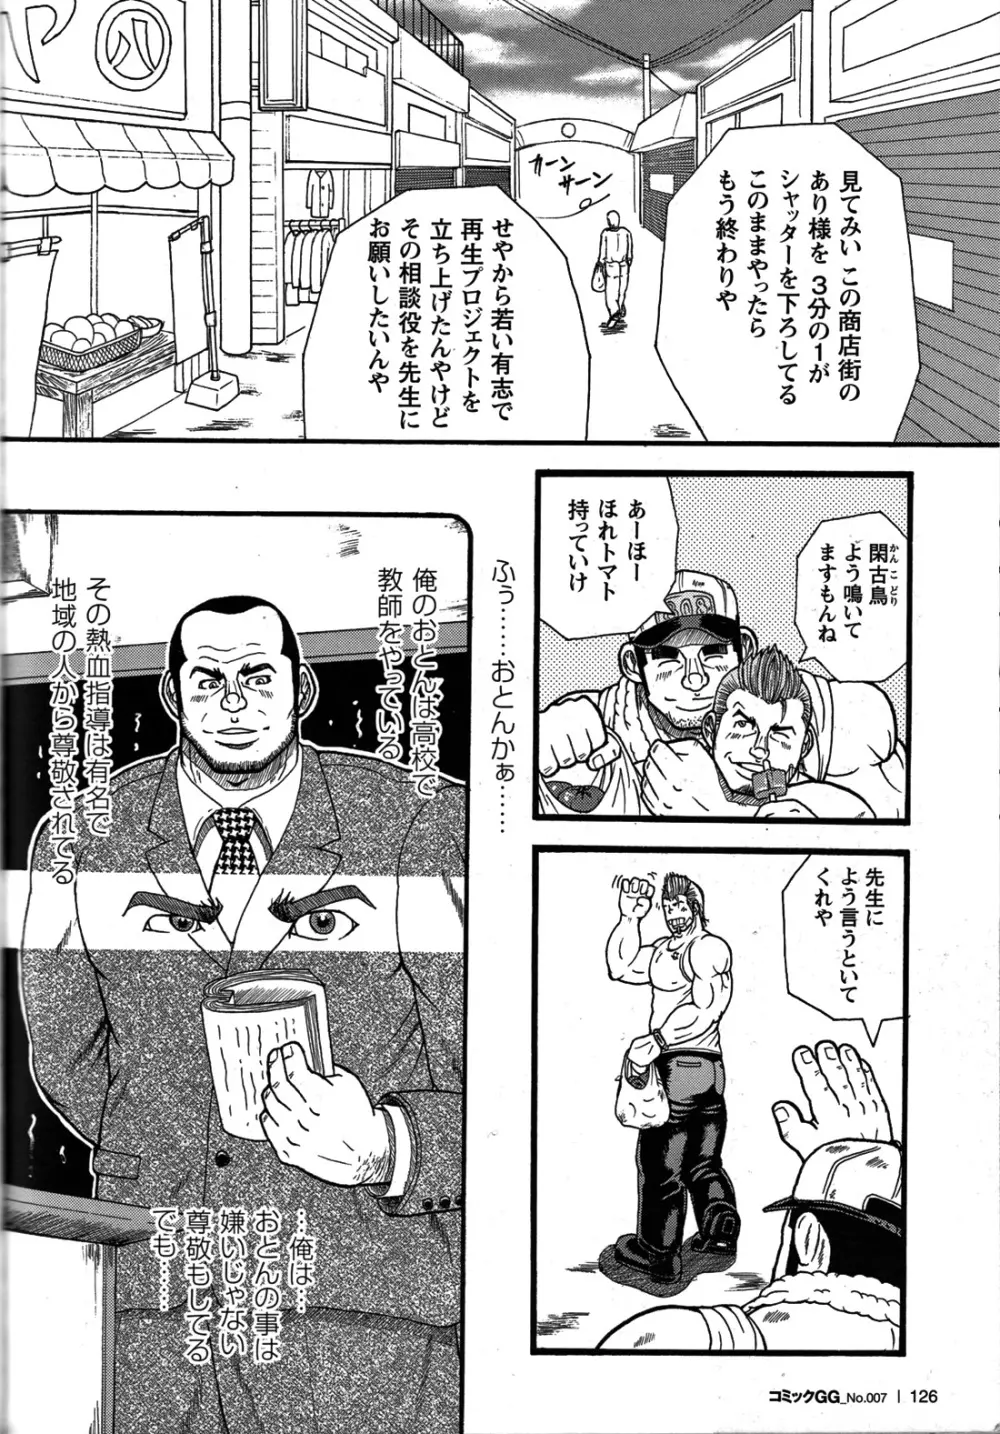 Comic G-men Gaho No.07 111ページ